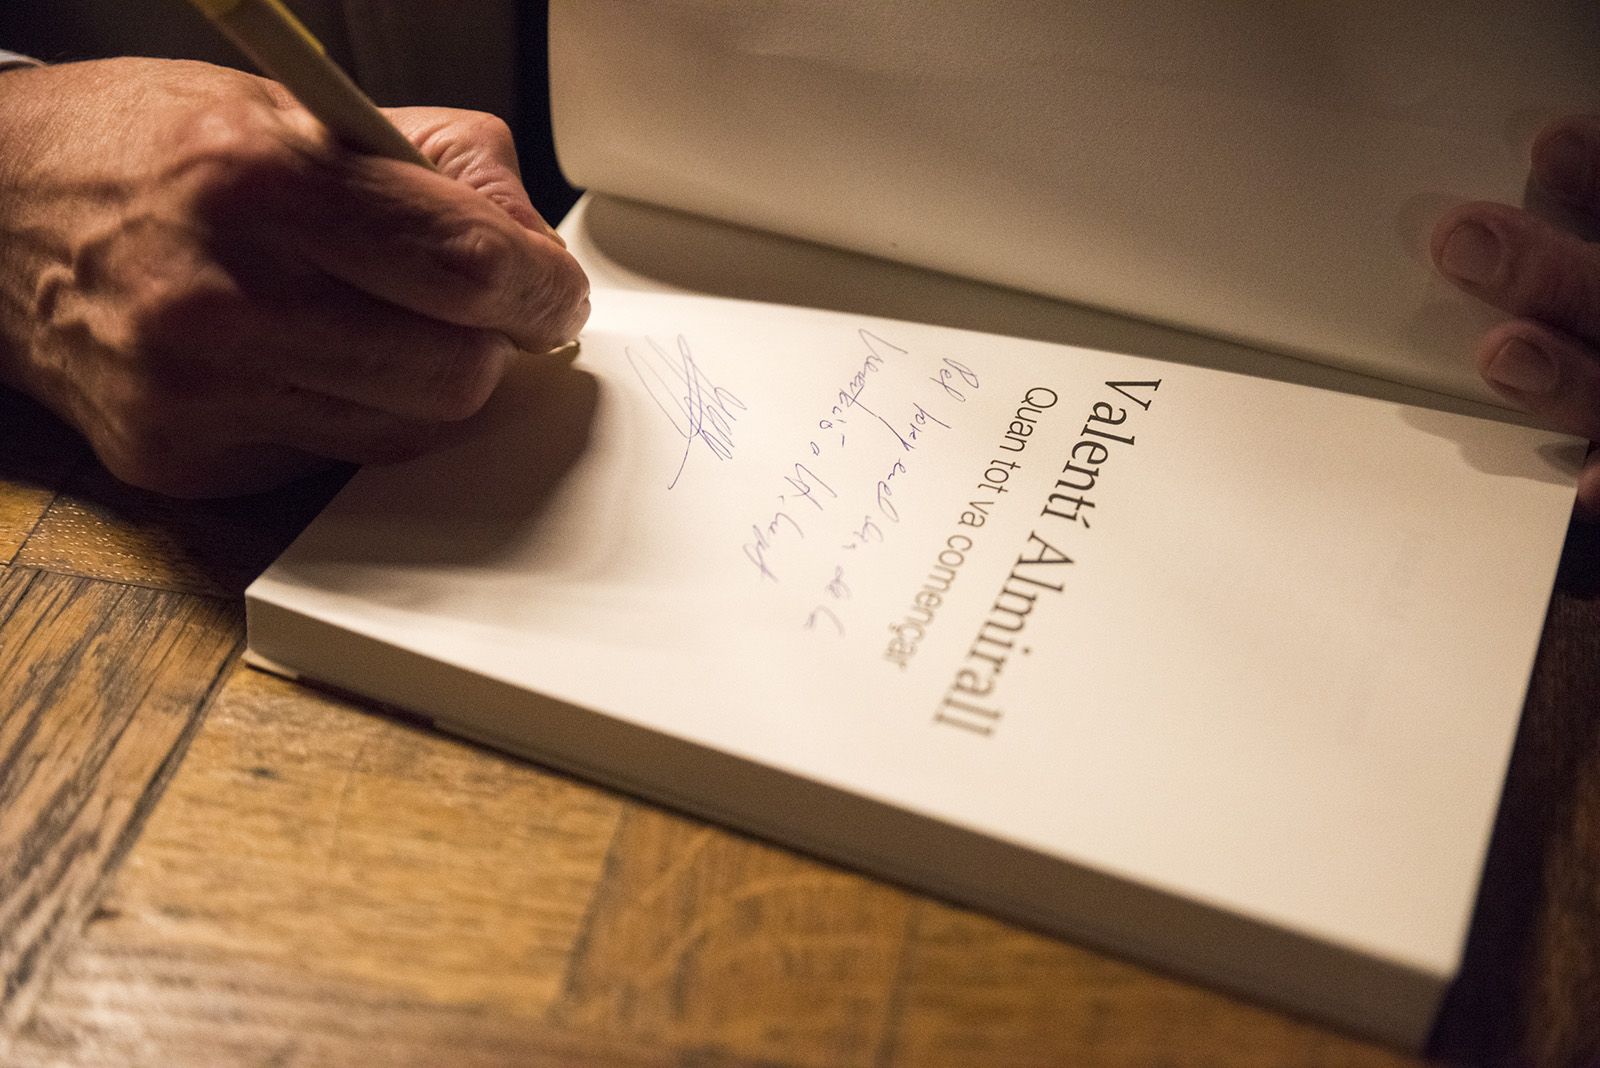 Presentació del llibre 'Valentí Almirall. Quan tot va començar.' de Josep Maria Figueres. FOTO: Bernat Millet.